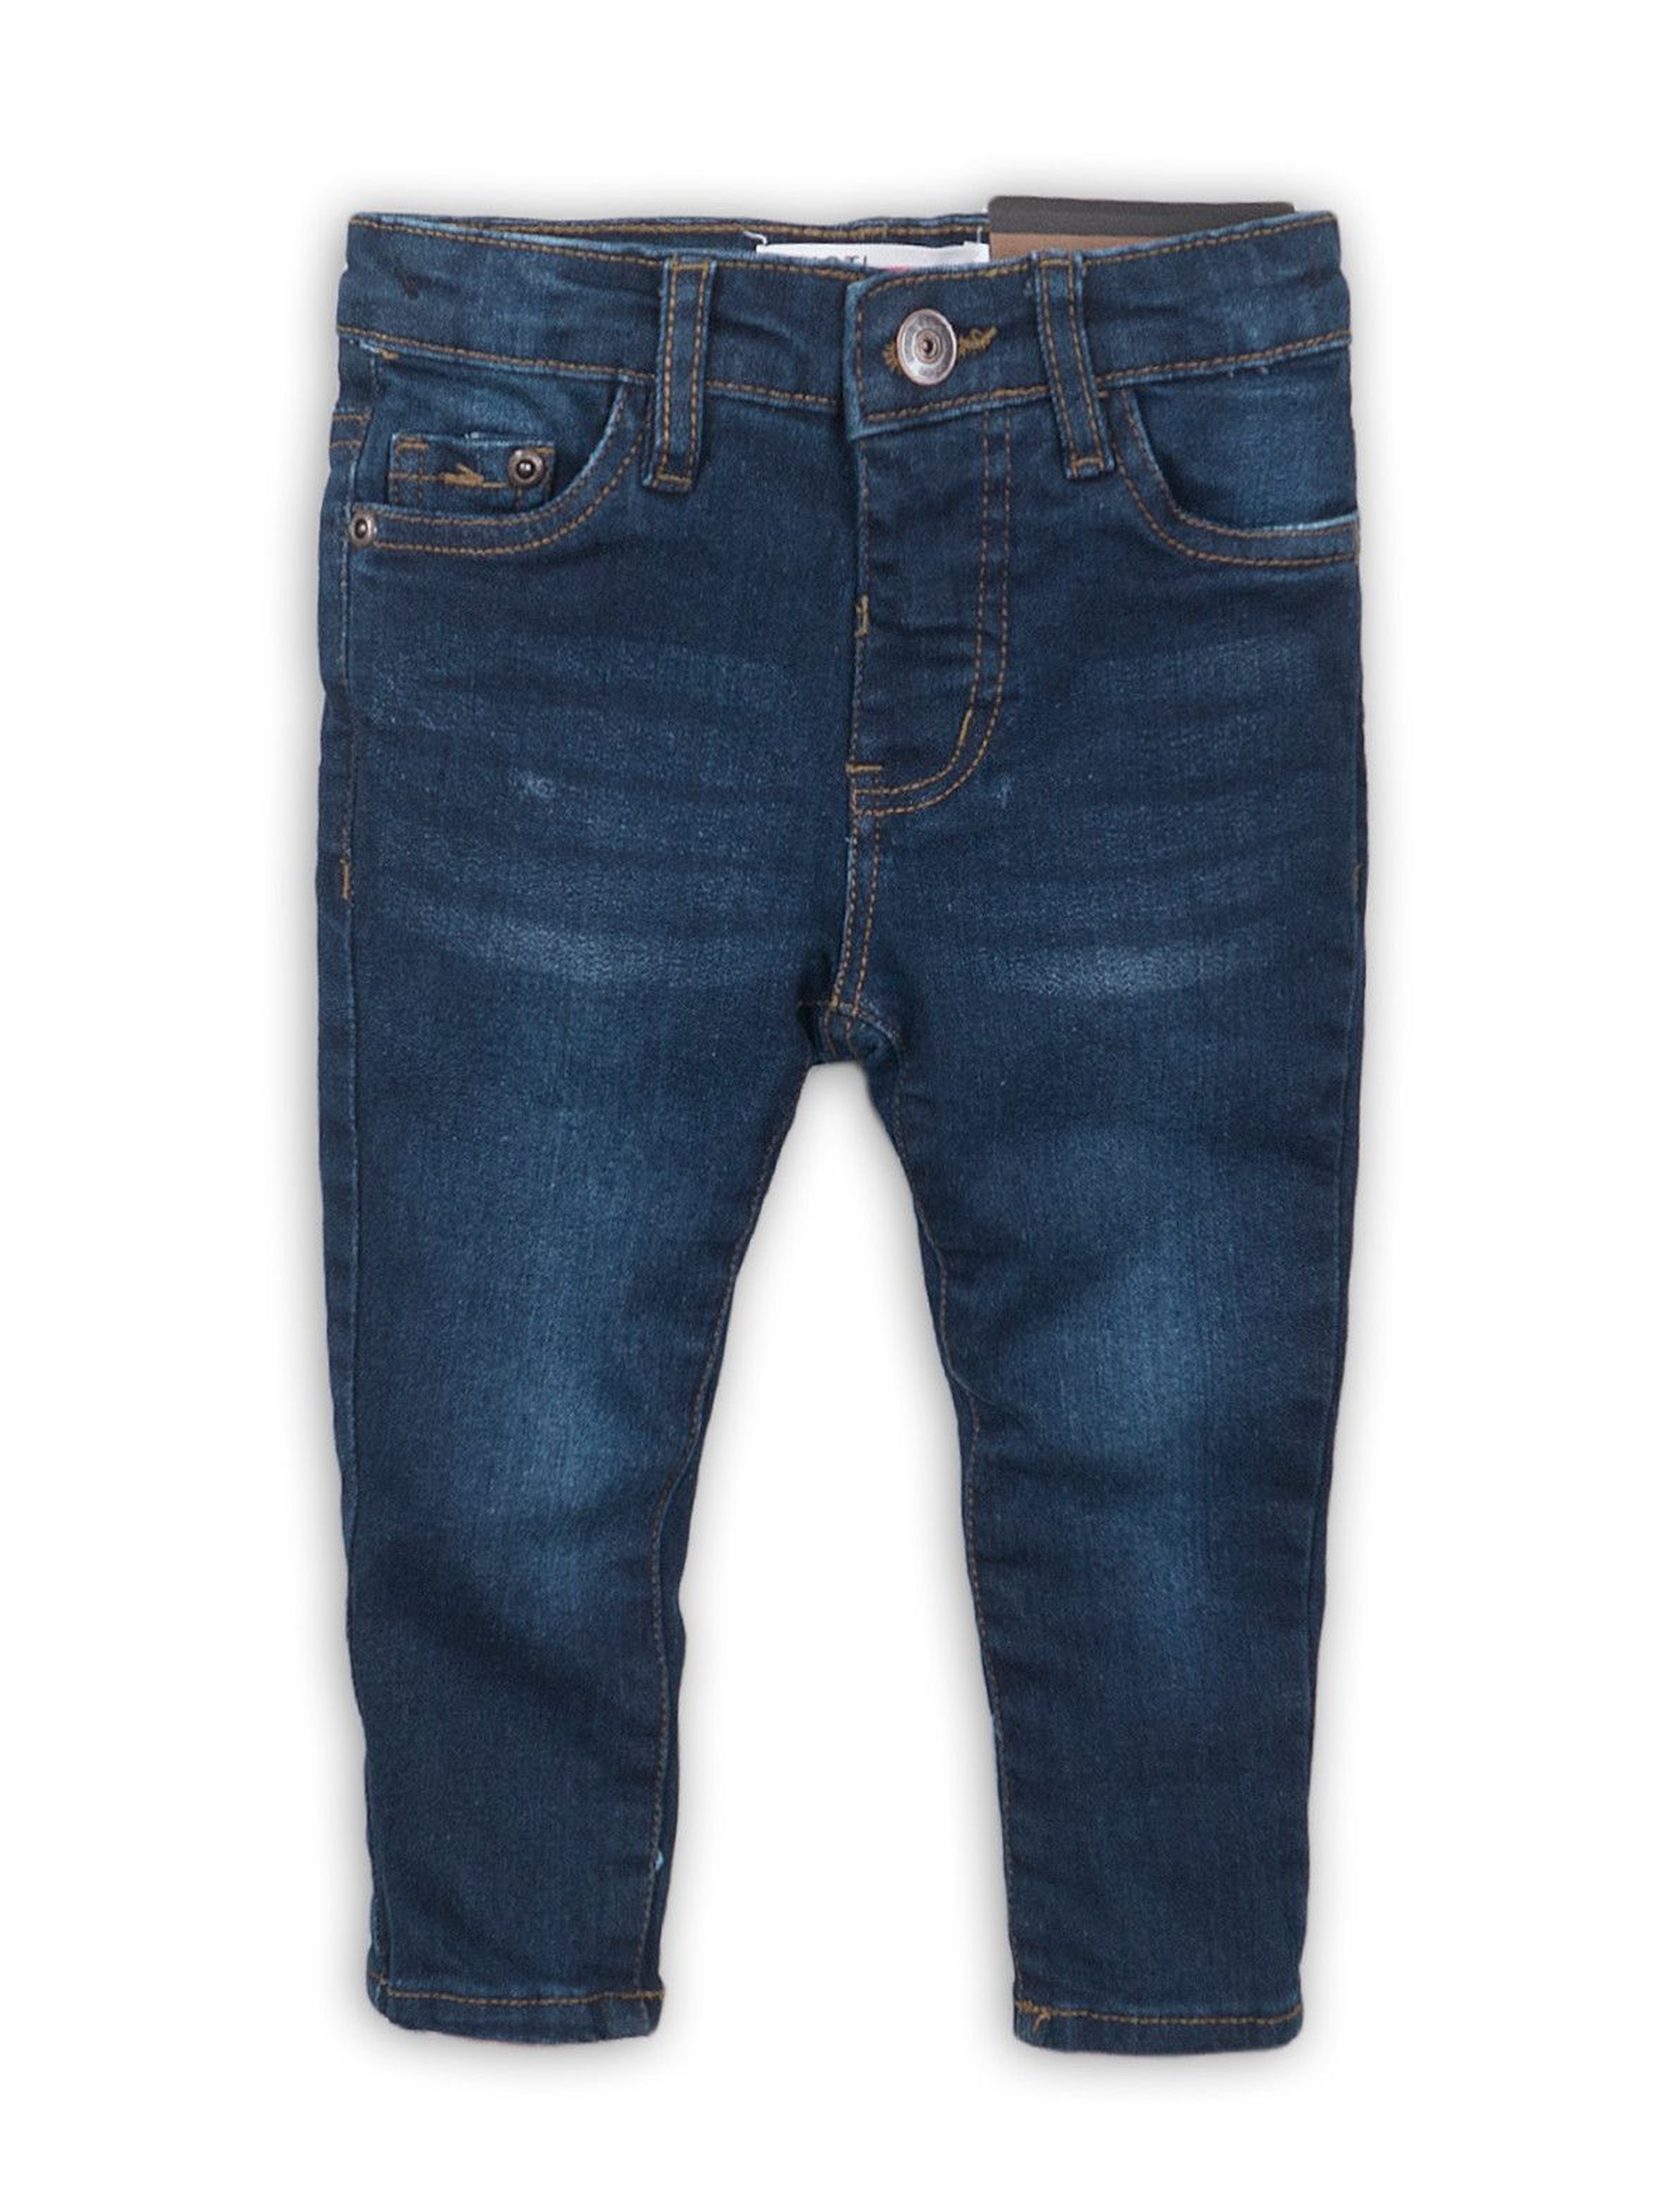 Spodnie chłopięce jeansowe - niebieskie